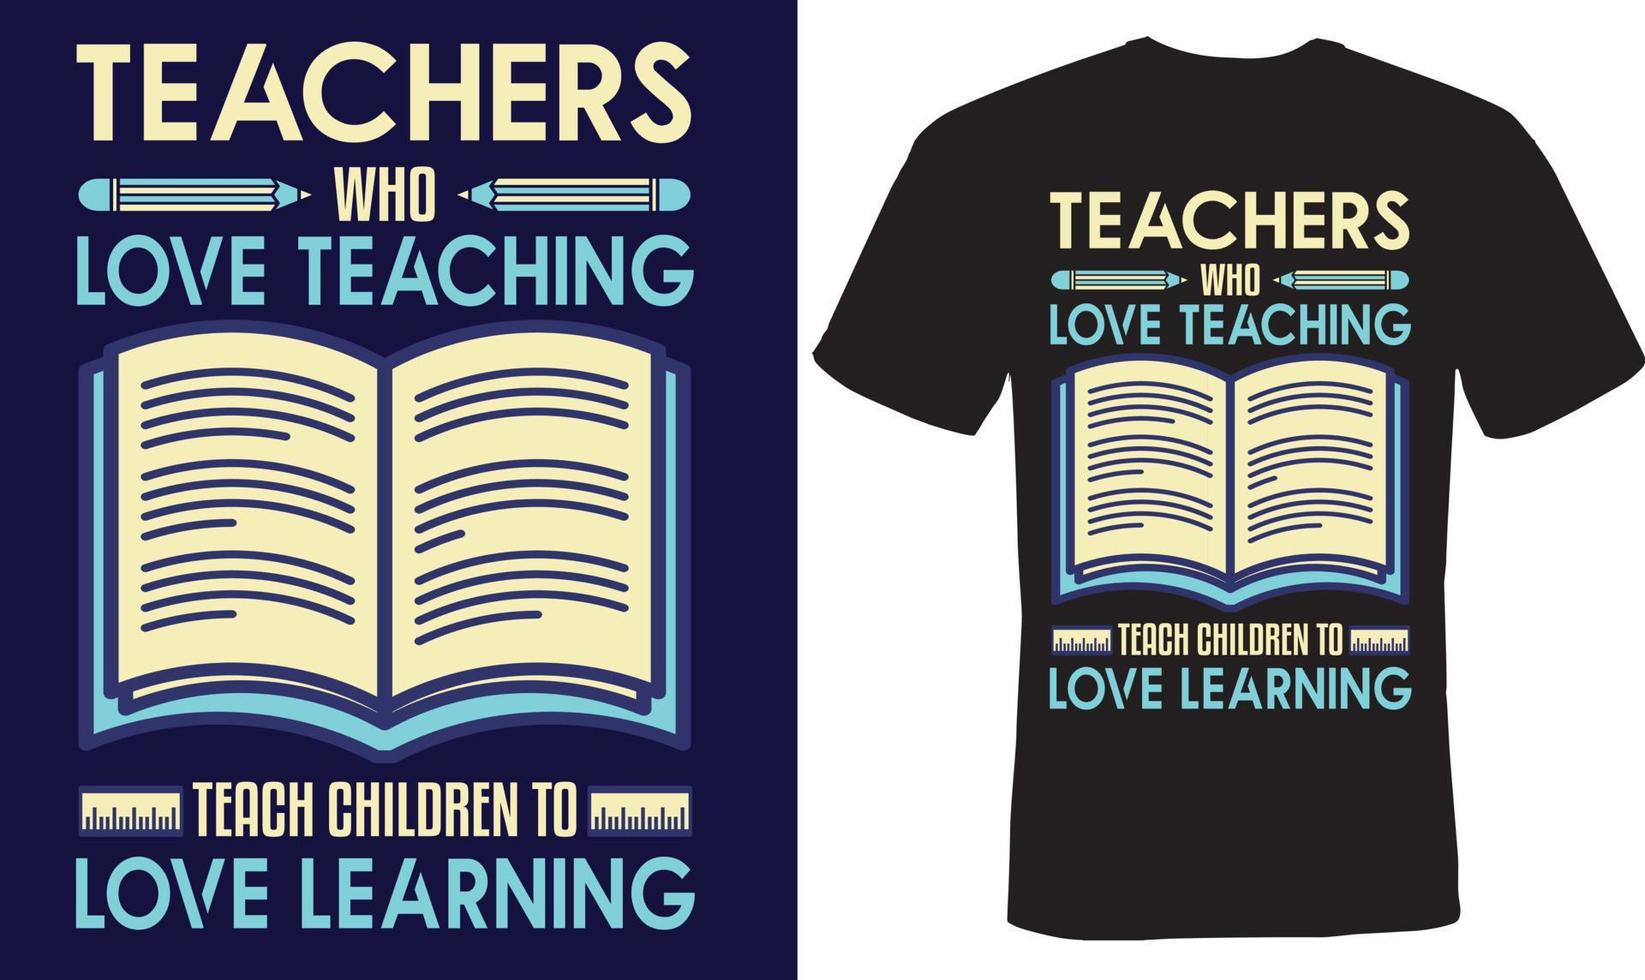 Teachers who love teaching teach children to love learning tshirt design for teachers vector